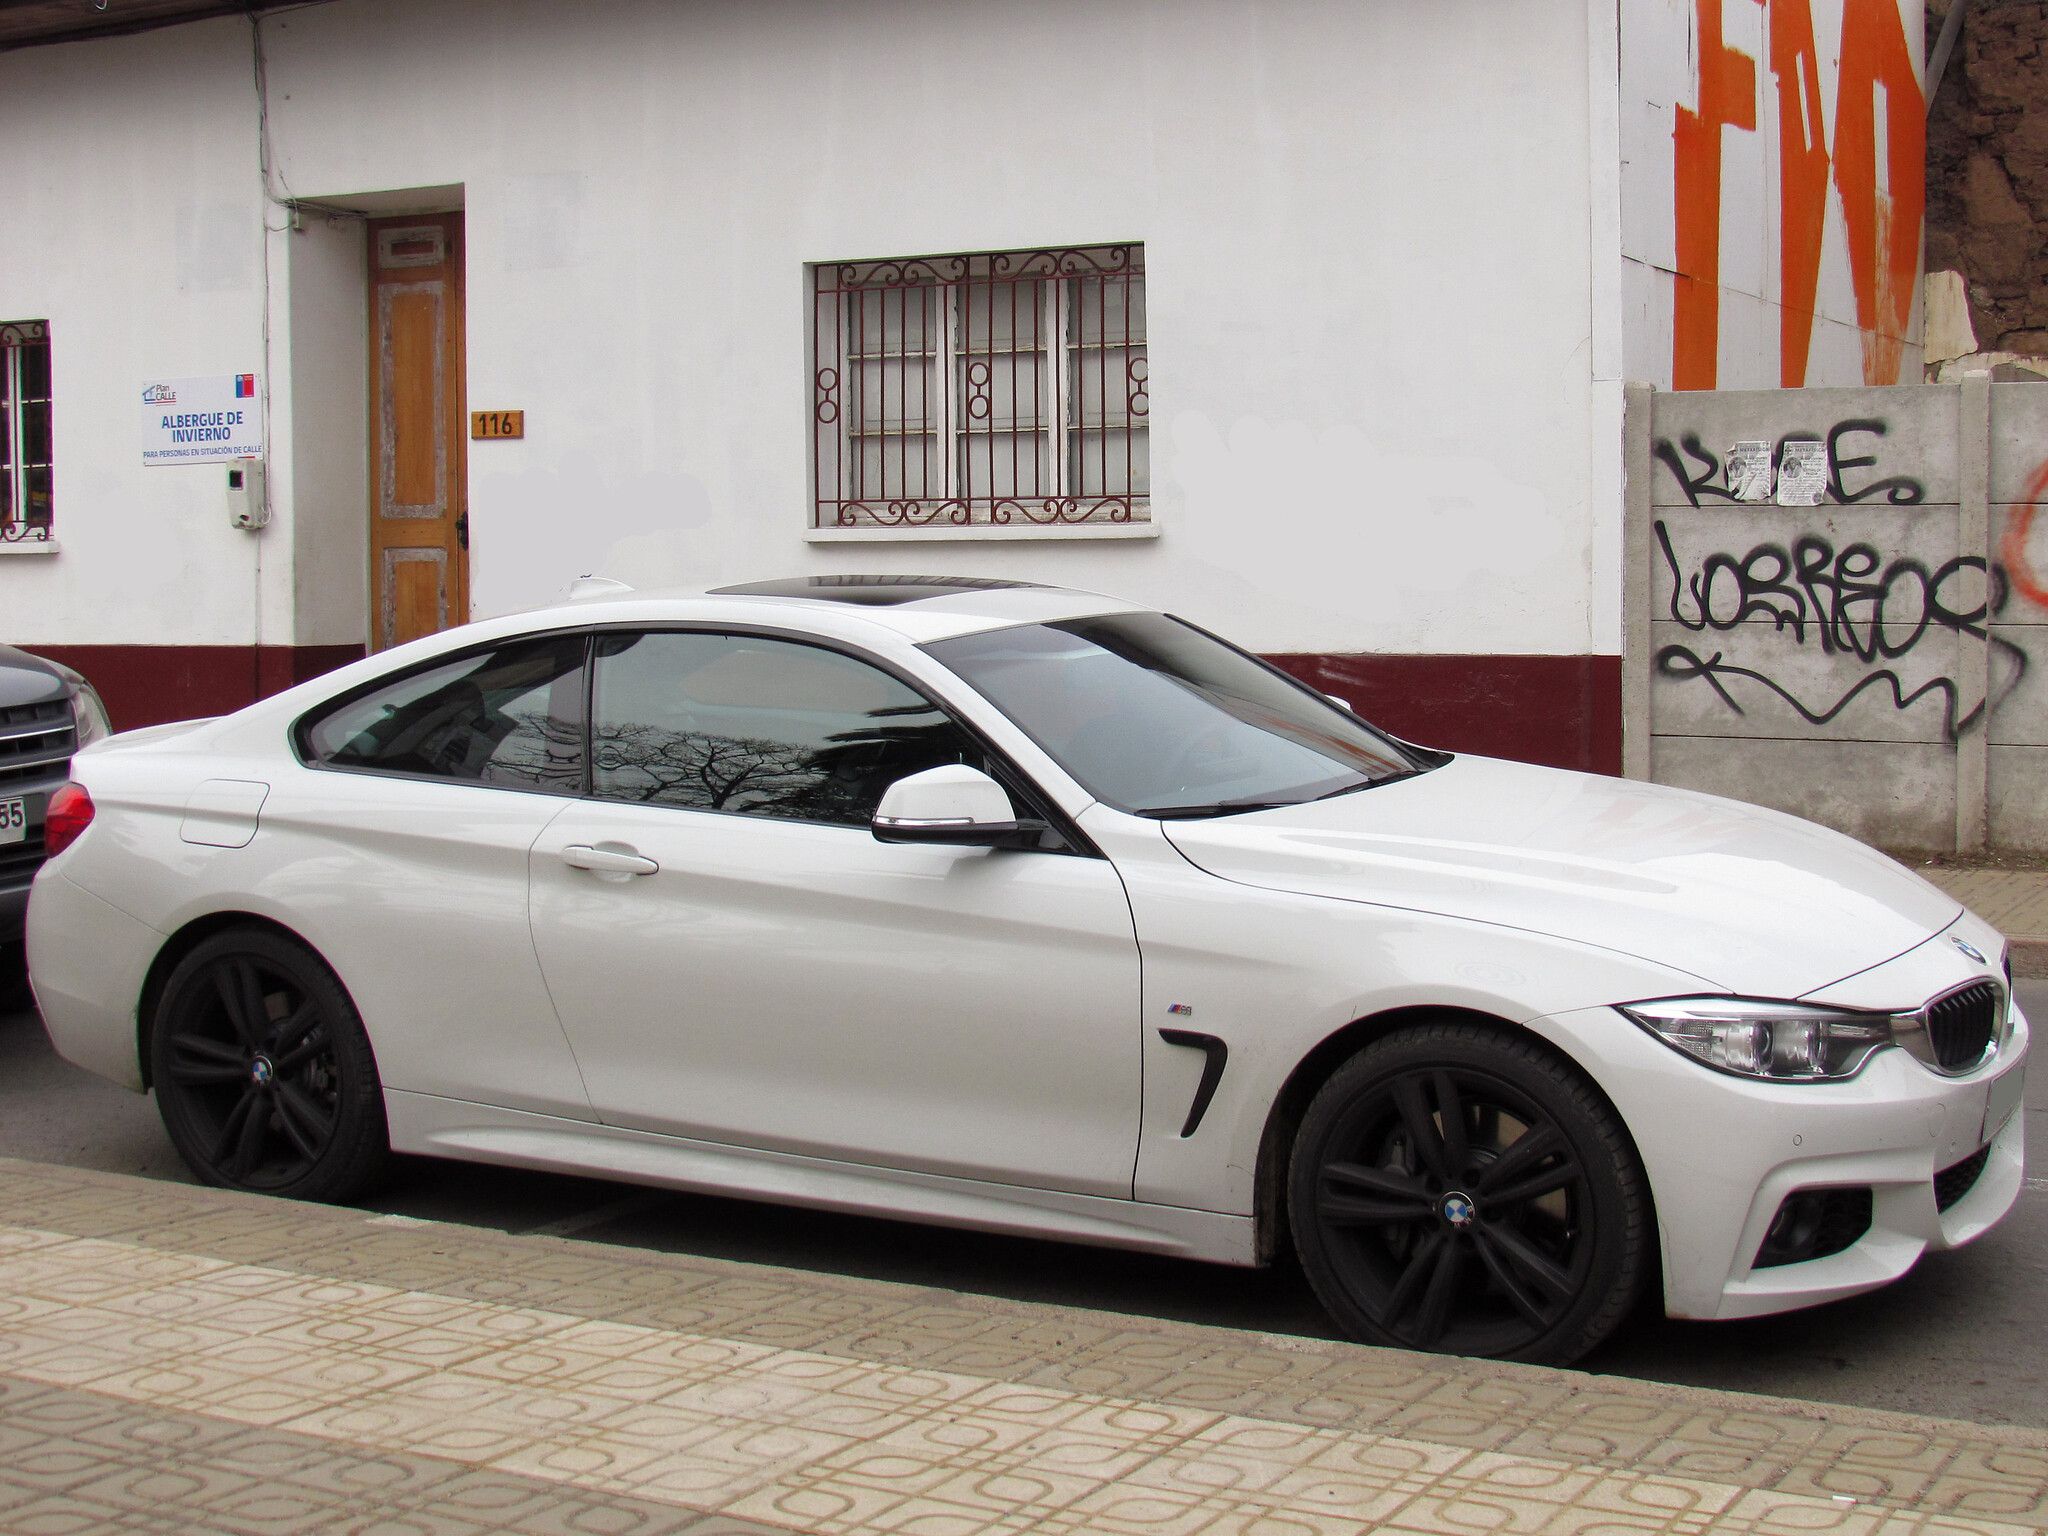 2014 BMW Serie 4 Coupé en blanco